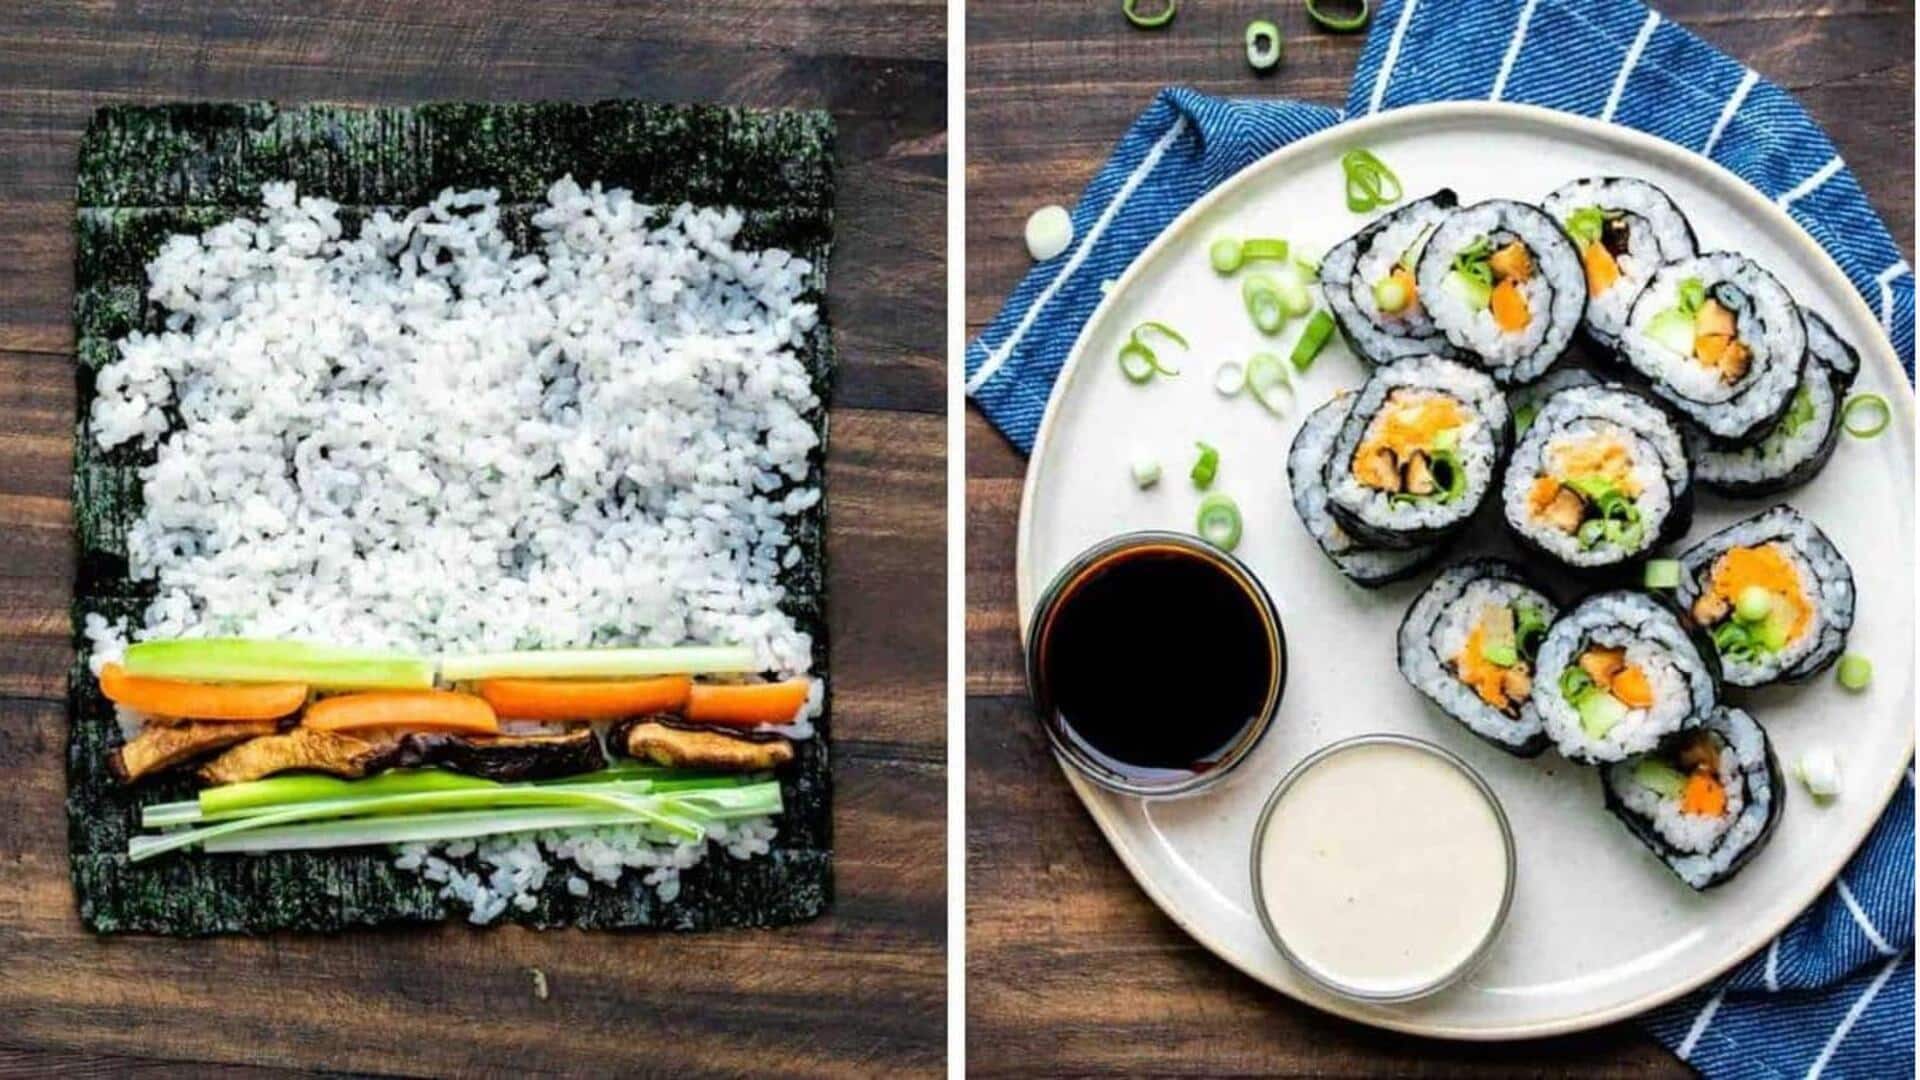 Coba resep sushi gulung ini untuk hari yang penuh cita rasa